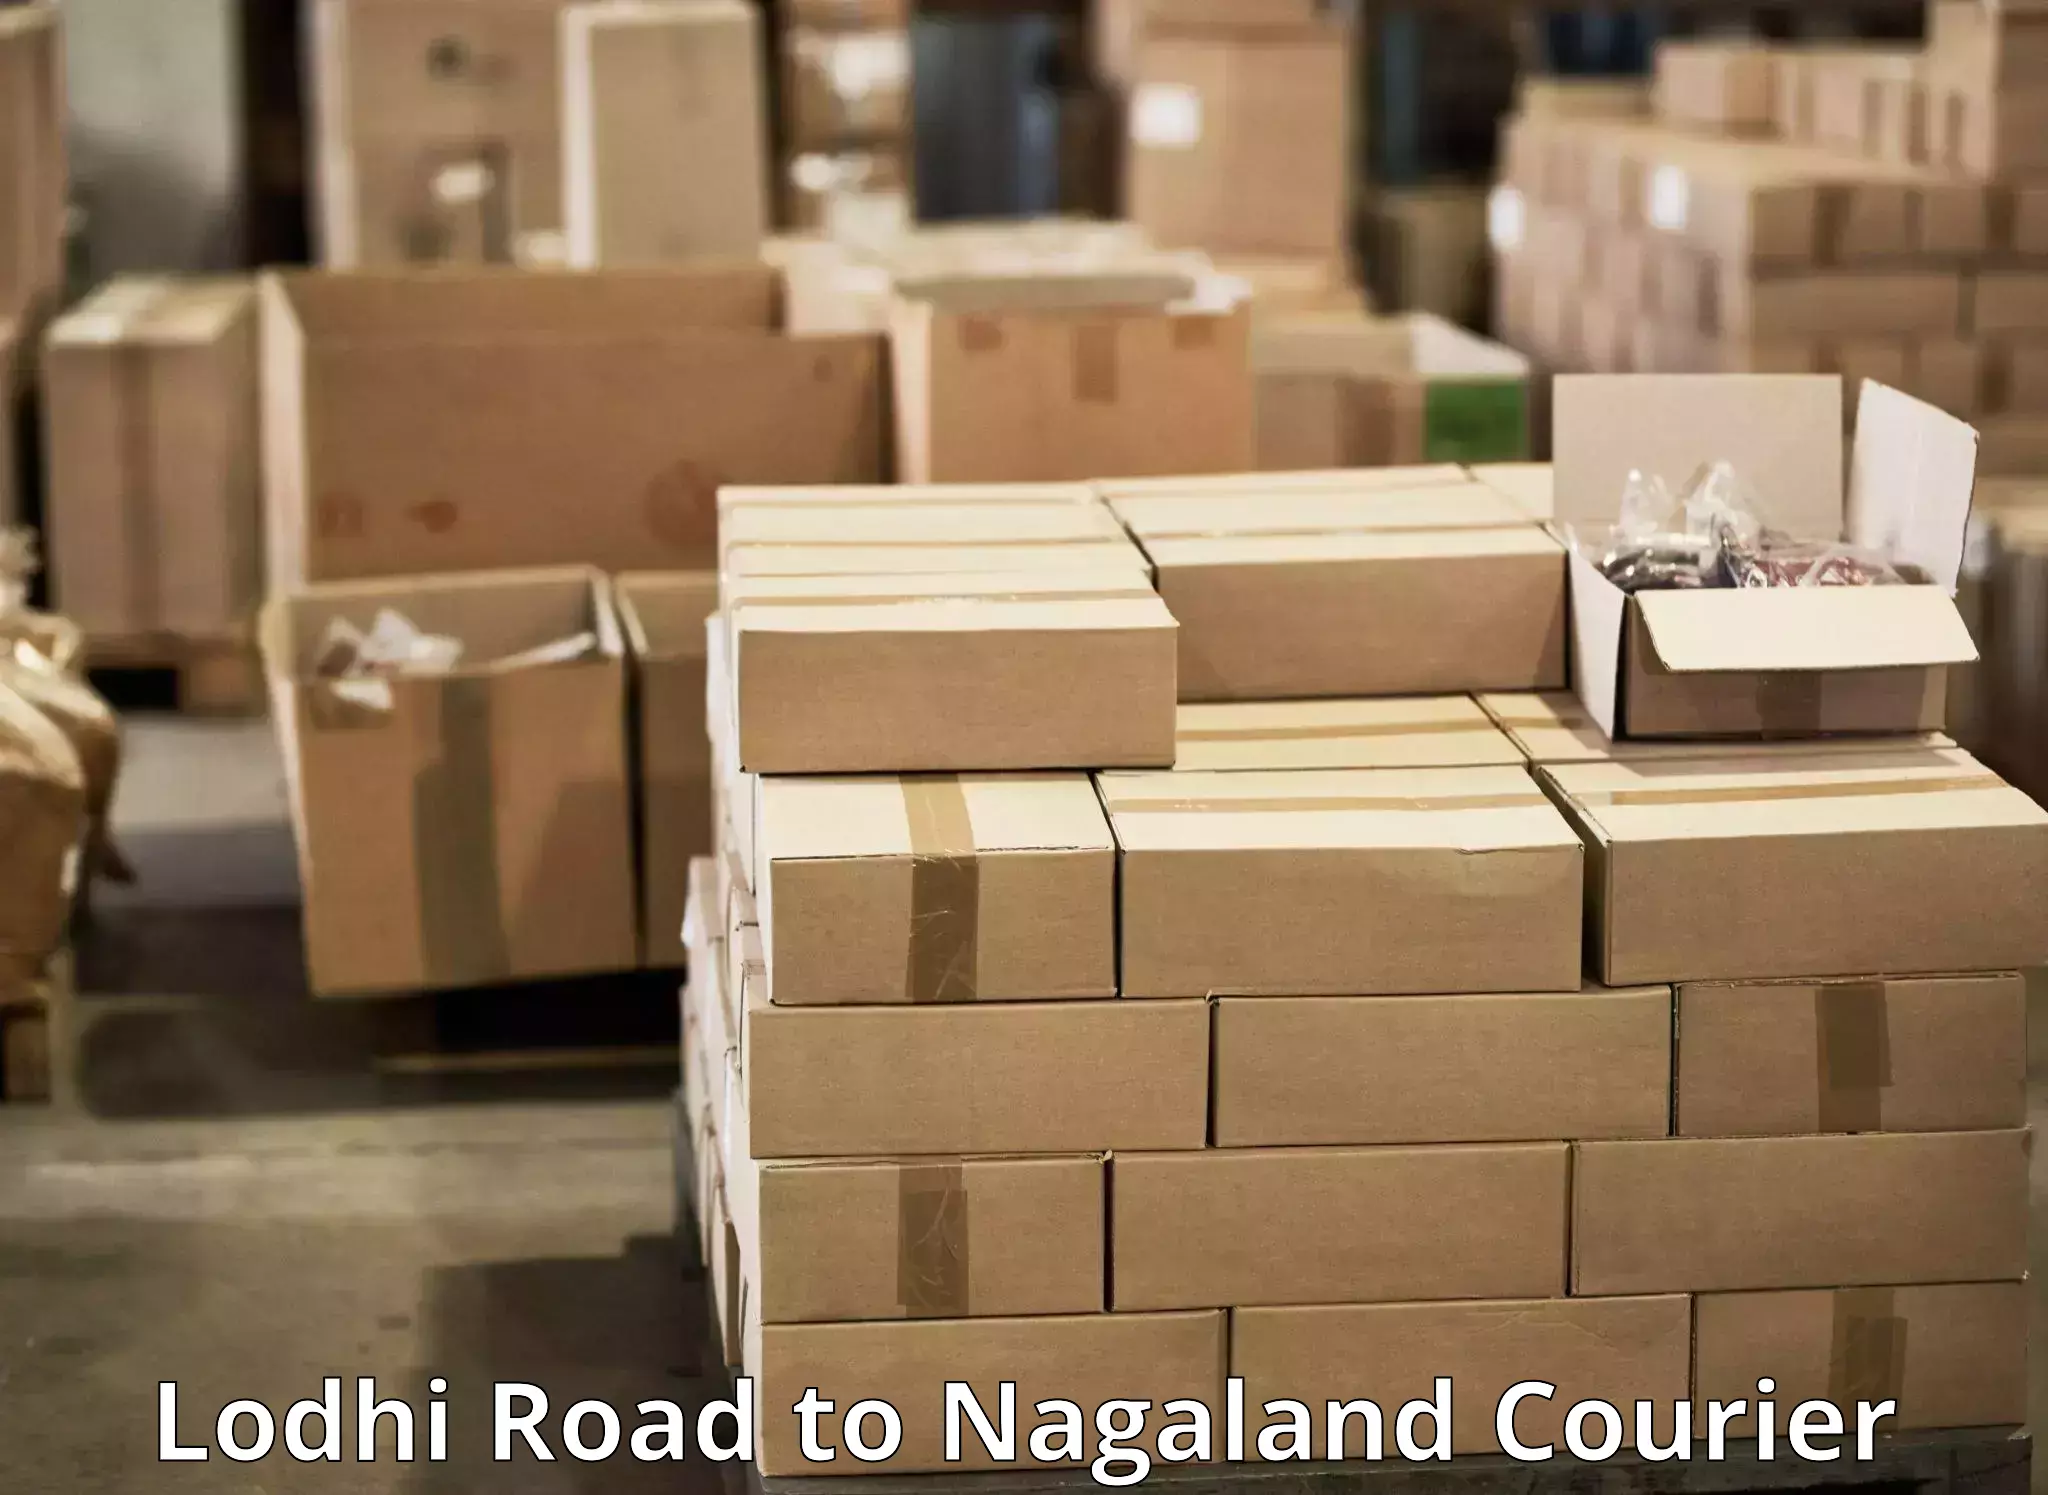 Door-to-door freight service Lodhi Road to Nagaland